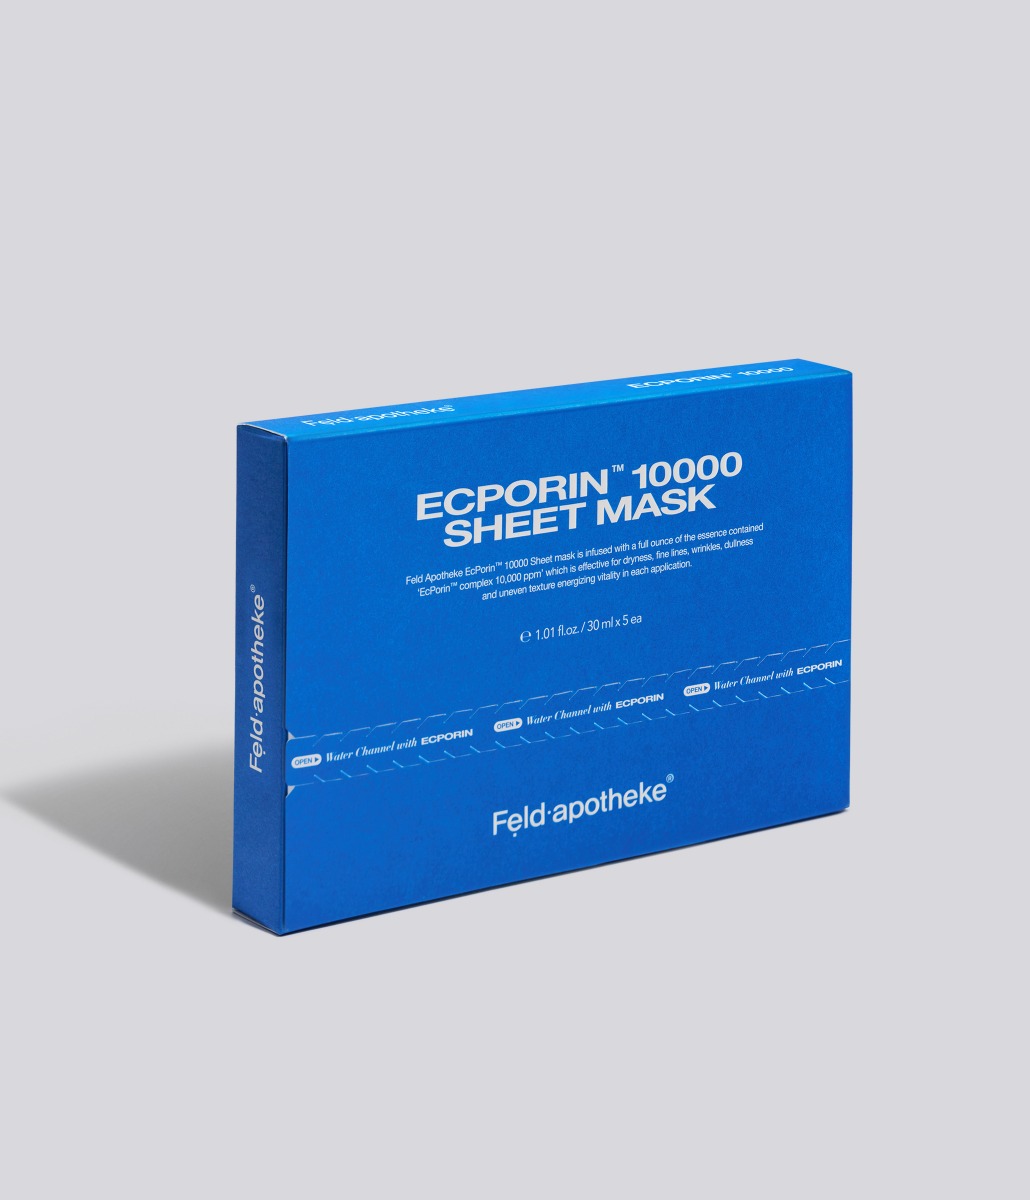 엑포린 10000 시트 마스크 1BOX (5매)